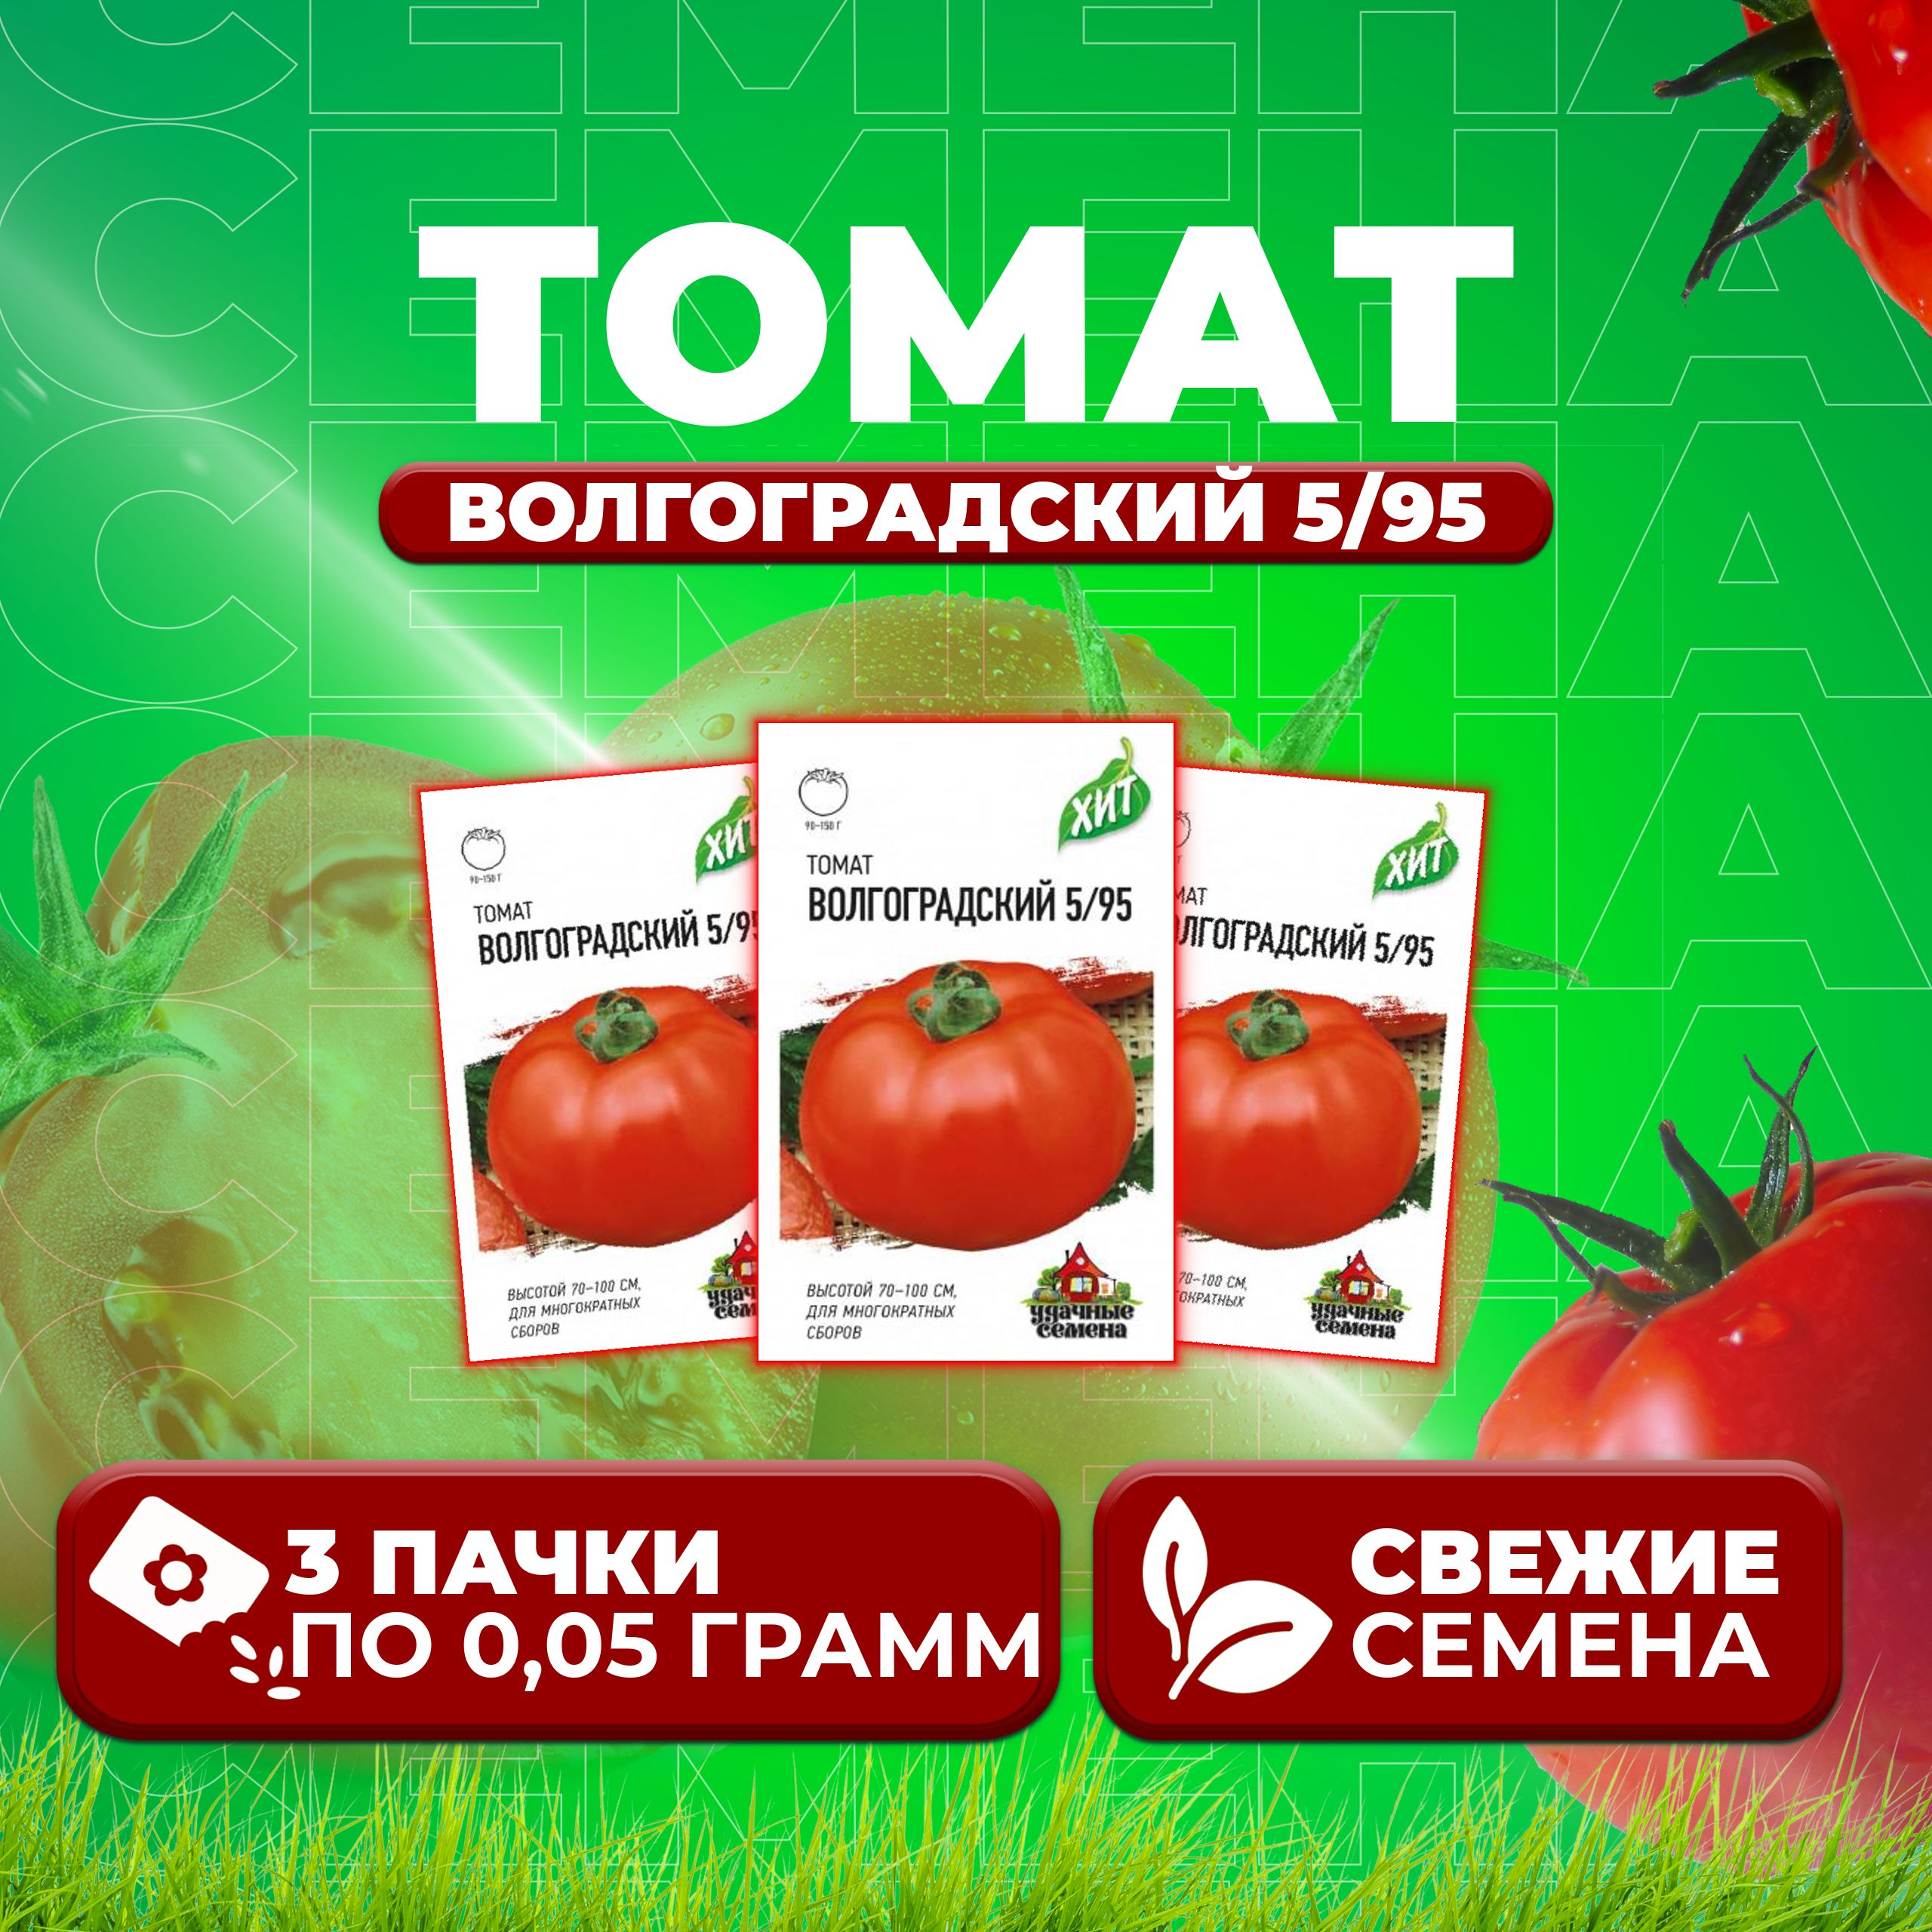 Семена томат Волгоградский 5/95 Удачные семена 1071858434-3 3 уп.